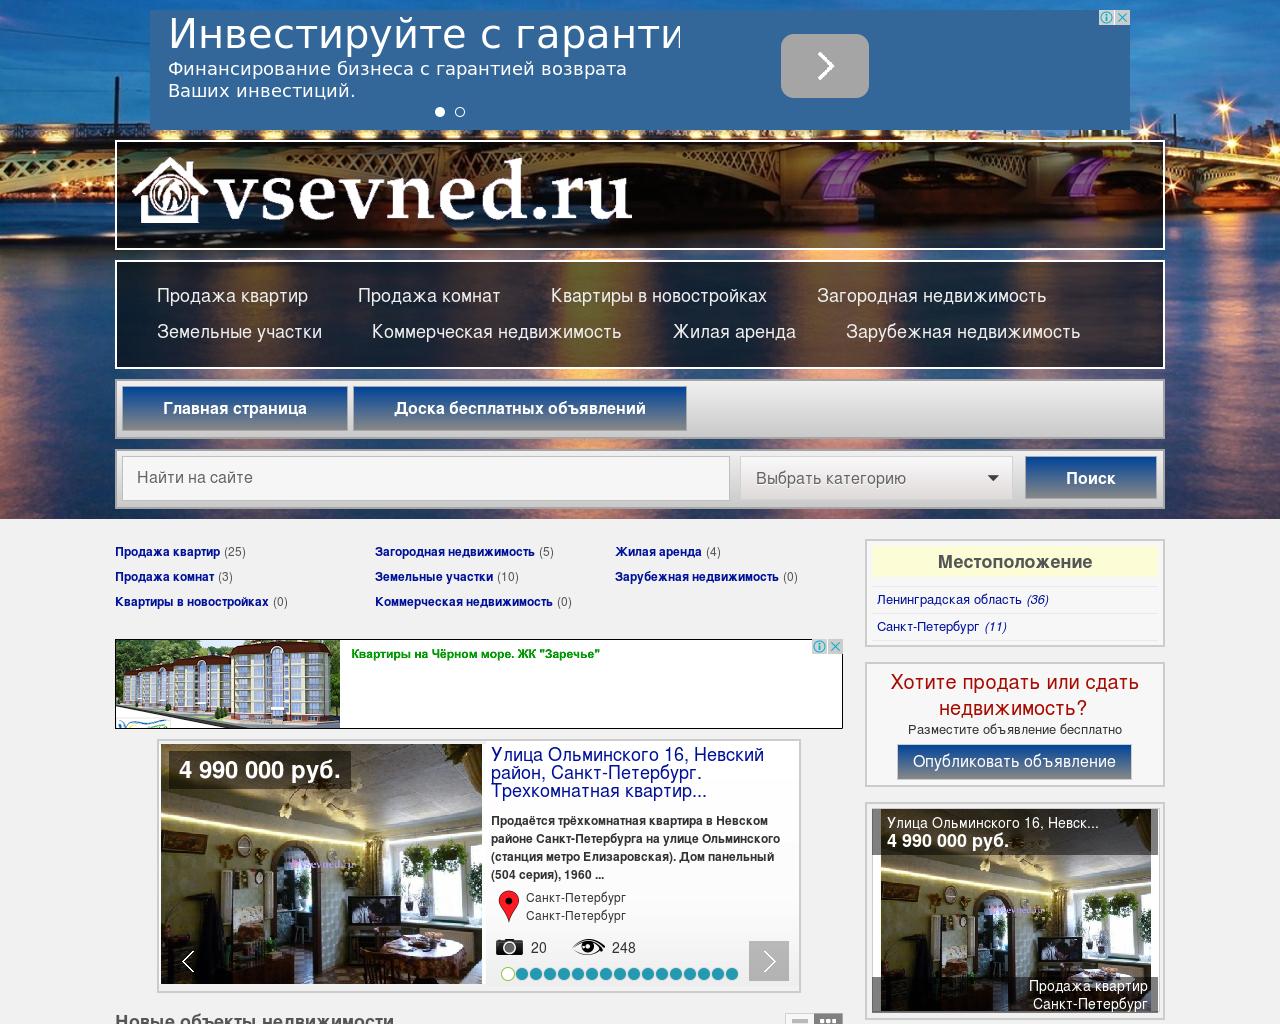 Изображение сайта vsevned.ru в разрешении 1280x1024